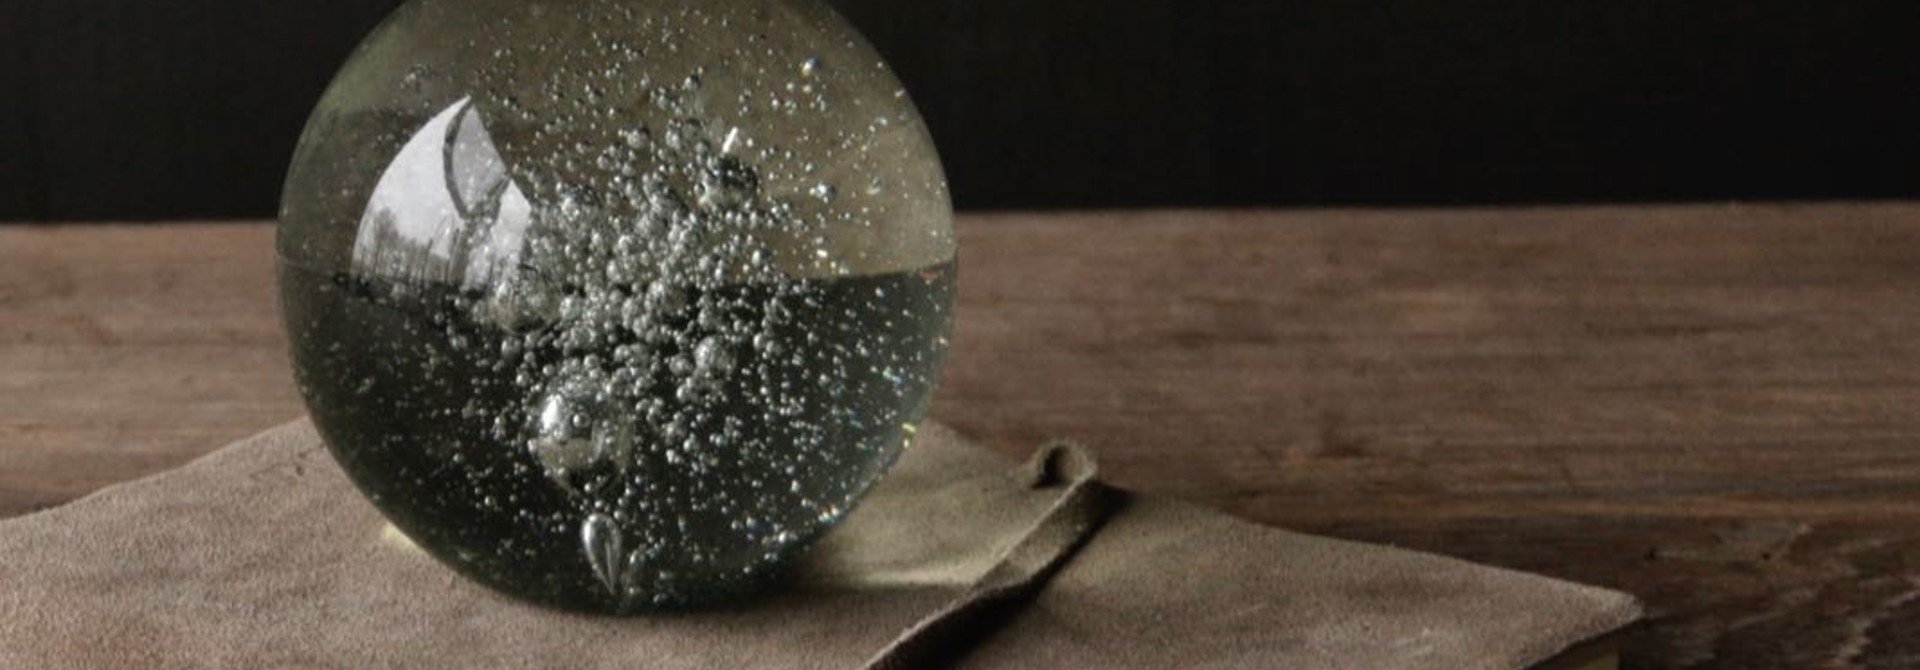 Glass paperweight ball